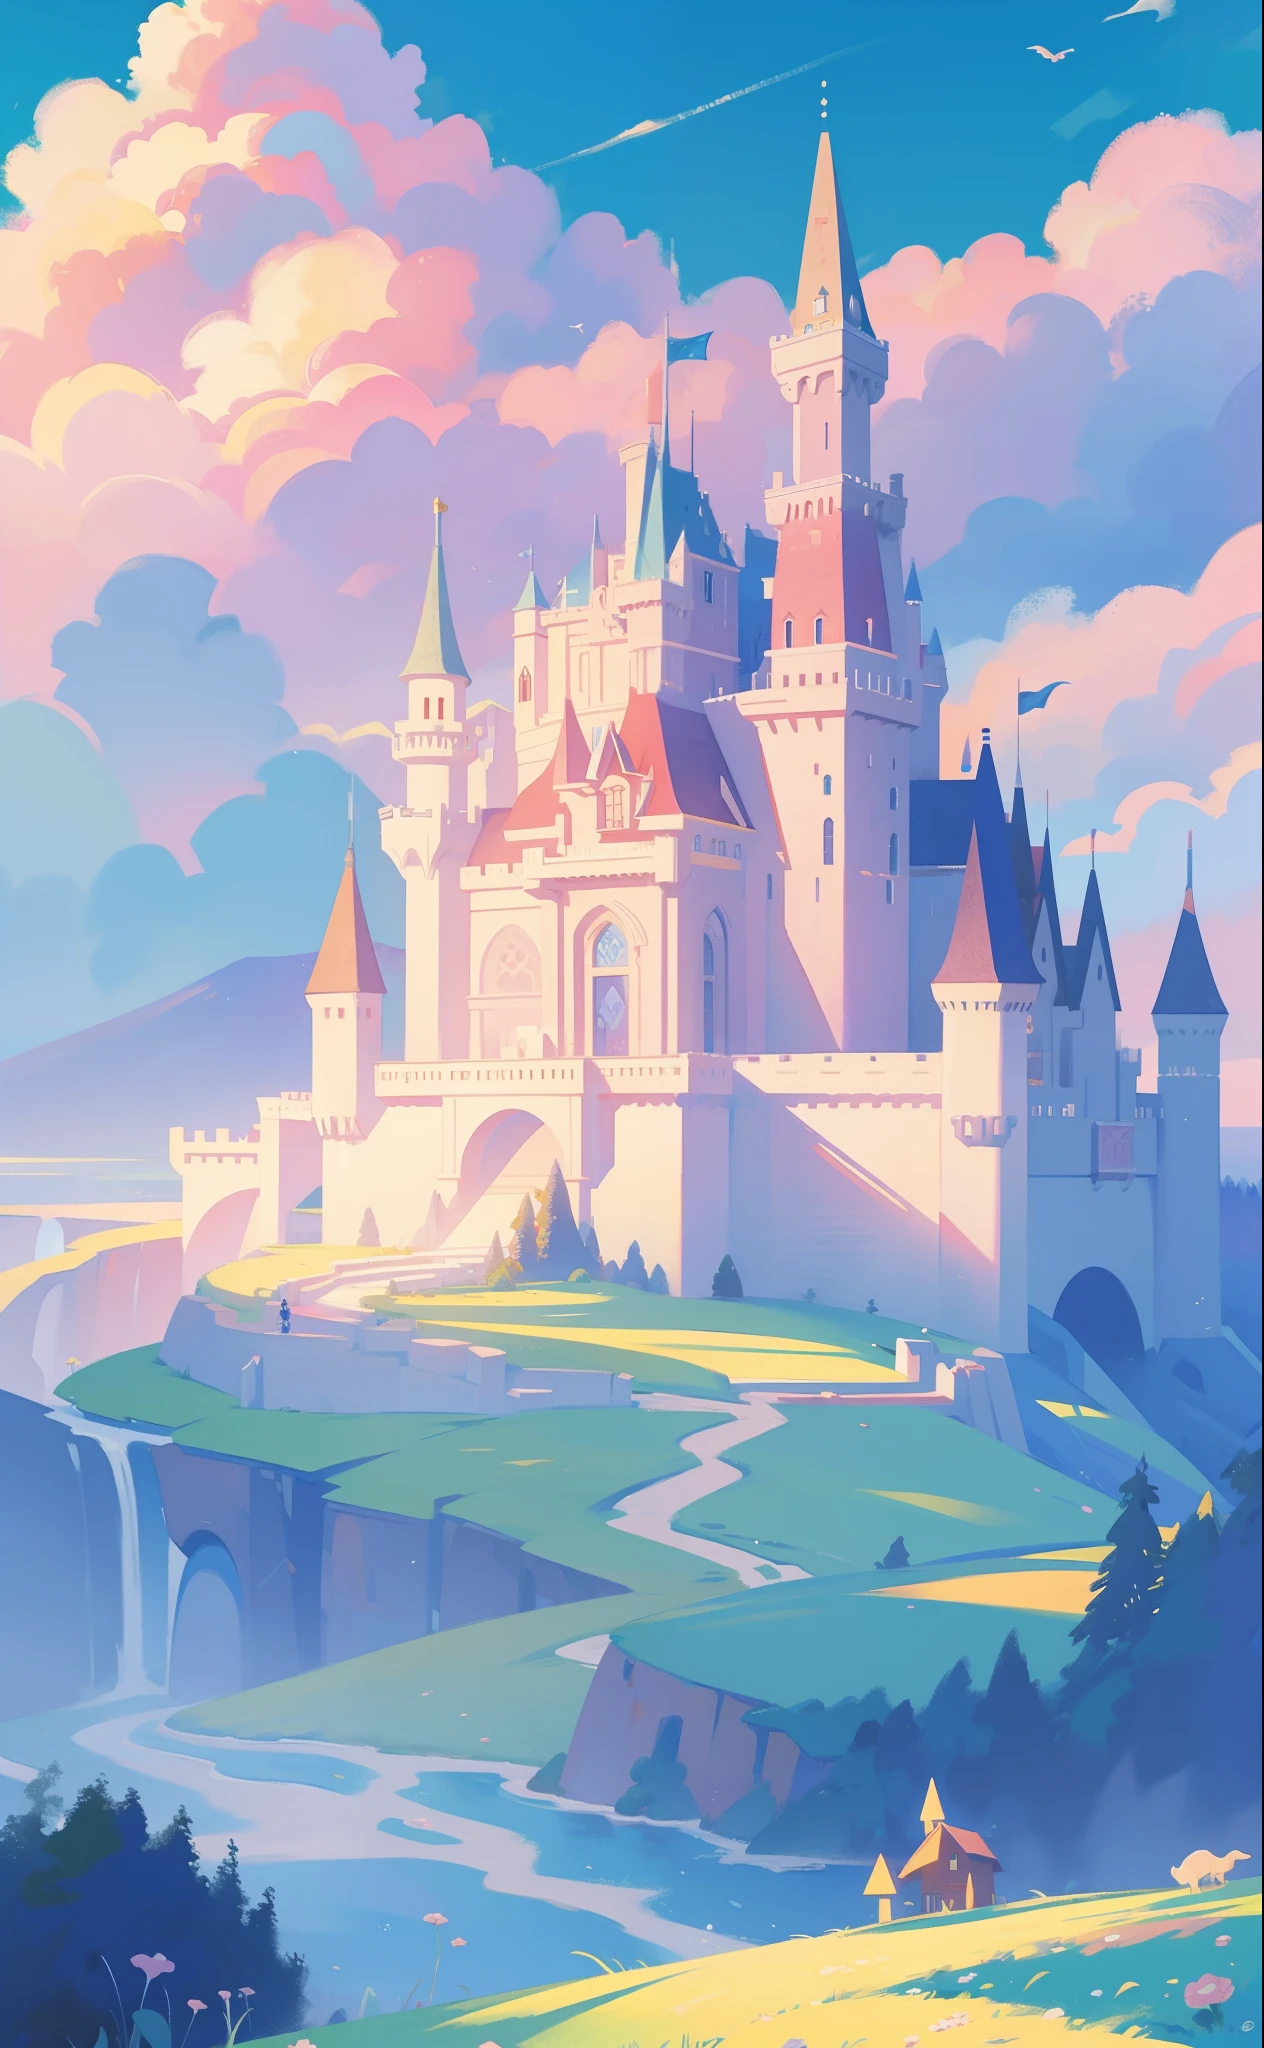 圖畫書插圖, 水彩故事書插圖, 公主城堡, 童話城堡, 童話塔, 雲, 鲜艳的柔和色彩, 梦, 豐富多彩的, 异想天开, 神奇, 傑作, 最好的品質, 銳利的焦點, 錯綜複雜的細節環境, 精細細節, 8k分辨率